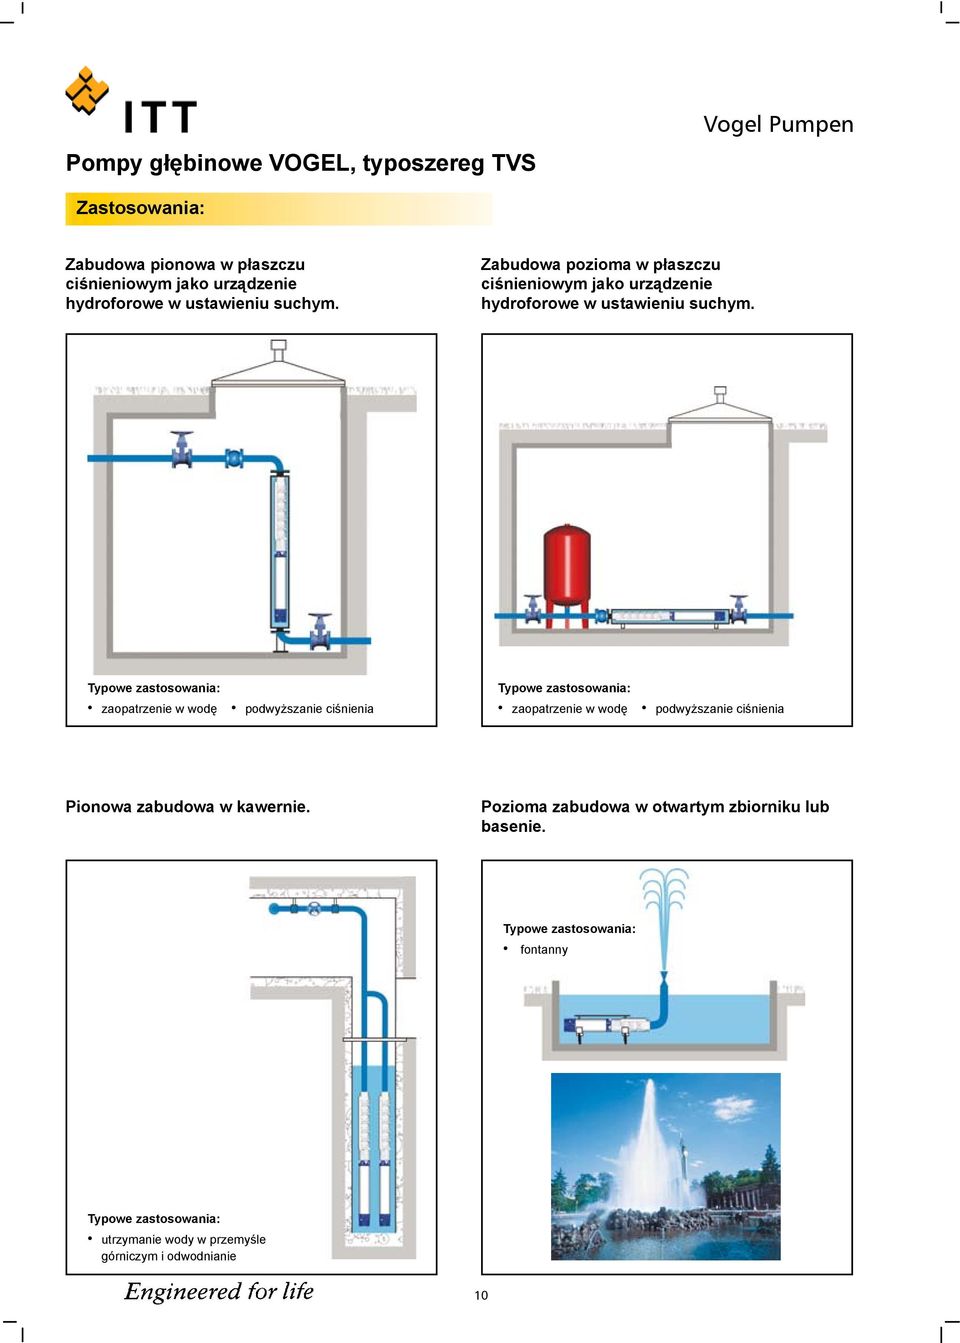 Typowe zastosowania: zaopatrzenie w wodę podwyższanie ciśnienia Typowe zastosowania: zaopatrzenie w wodę podwyższanie ciśnienia Pionowa